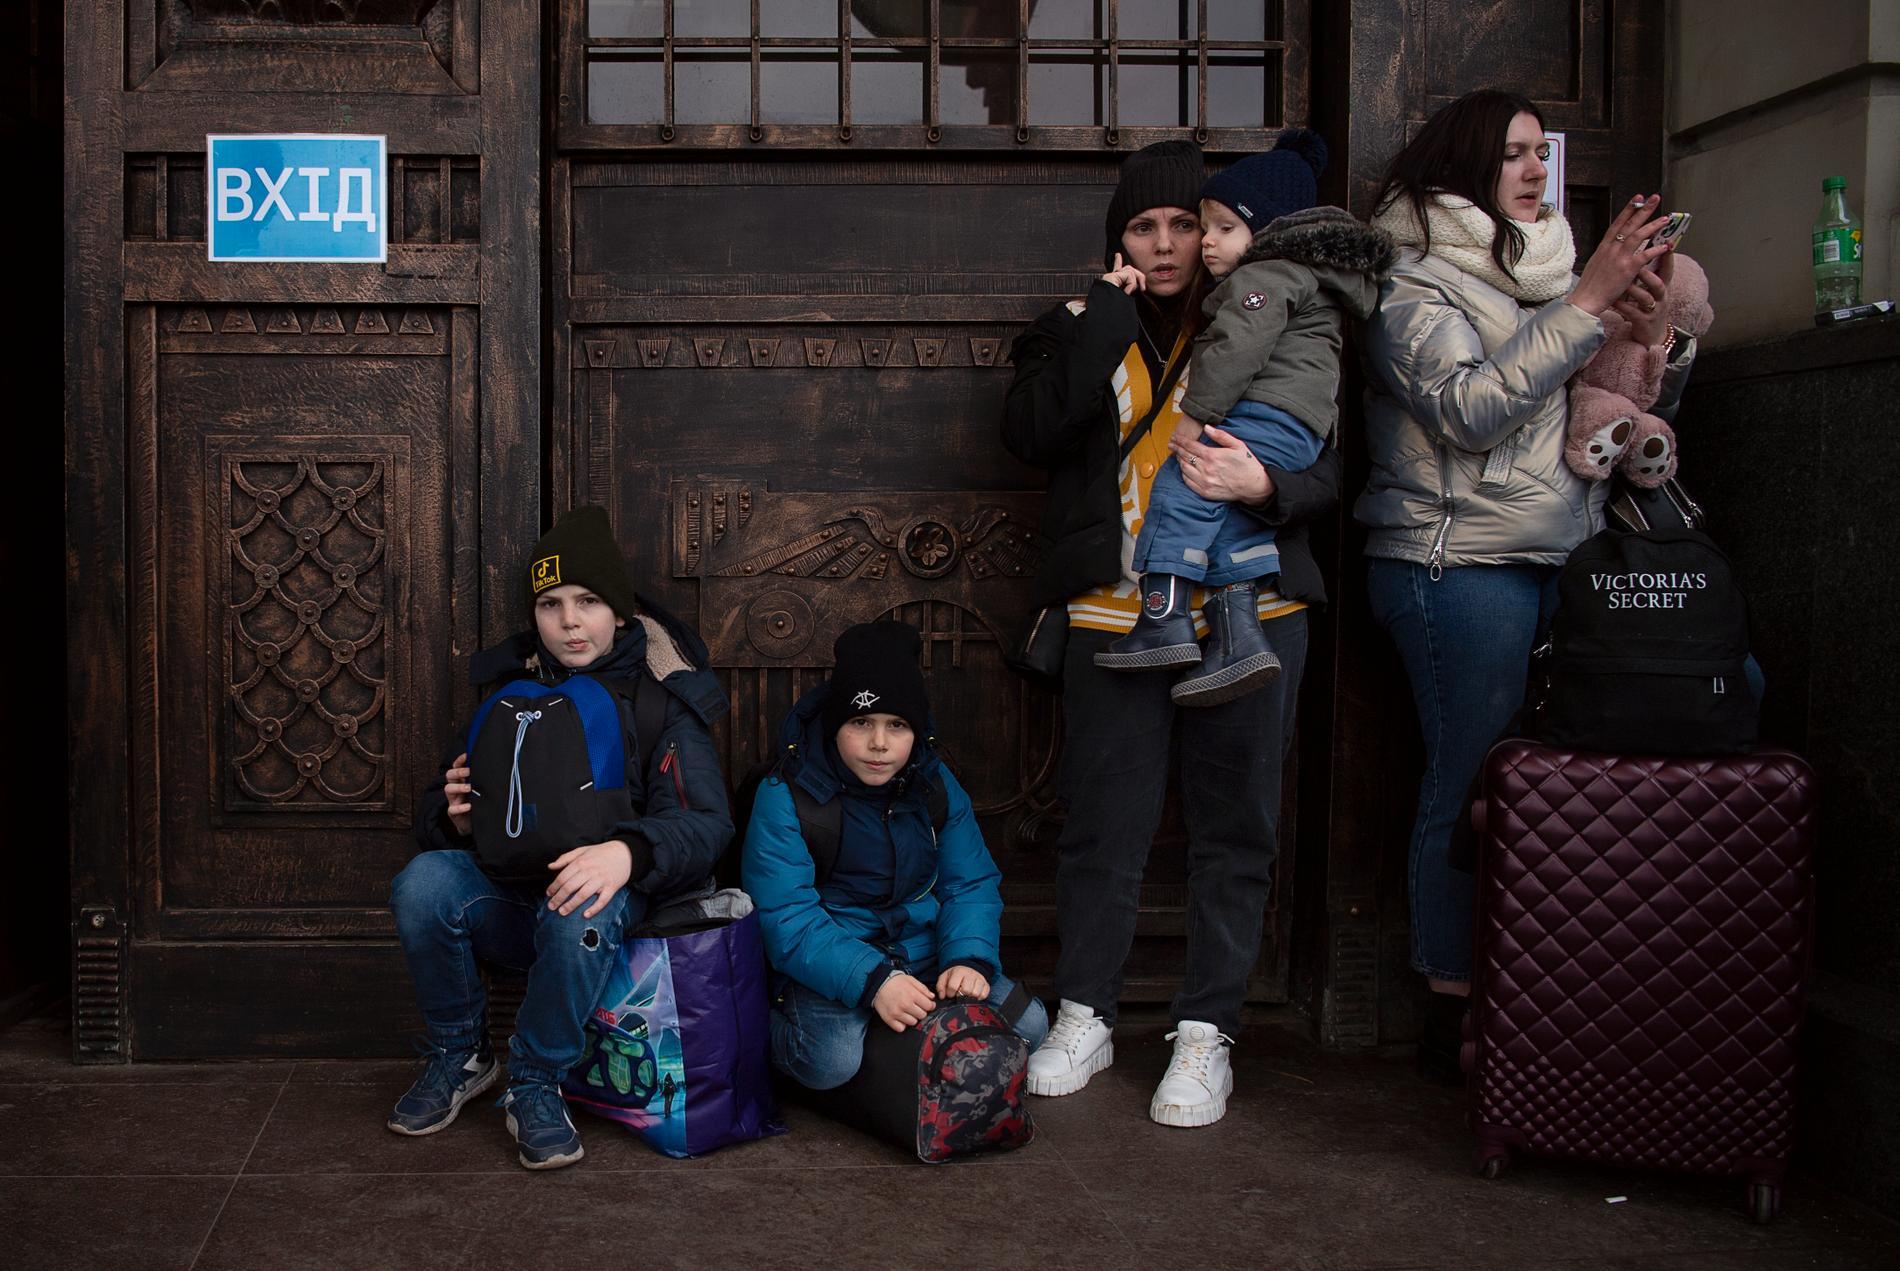 På centralstationen i Lviv samlas människor från hela Ukraina för att fly landet.